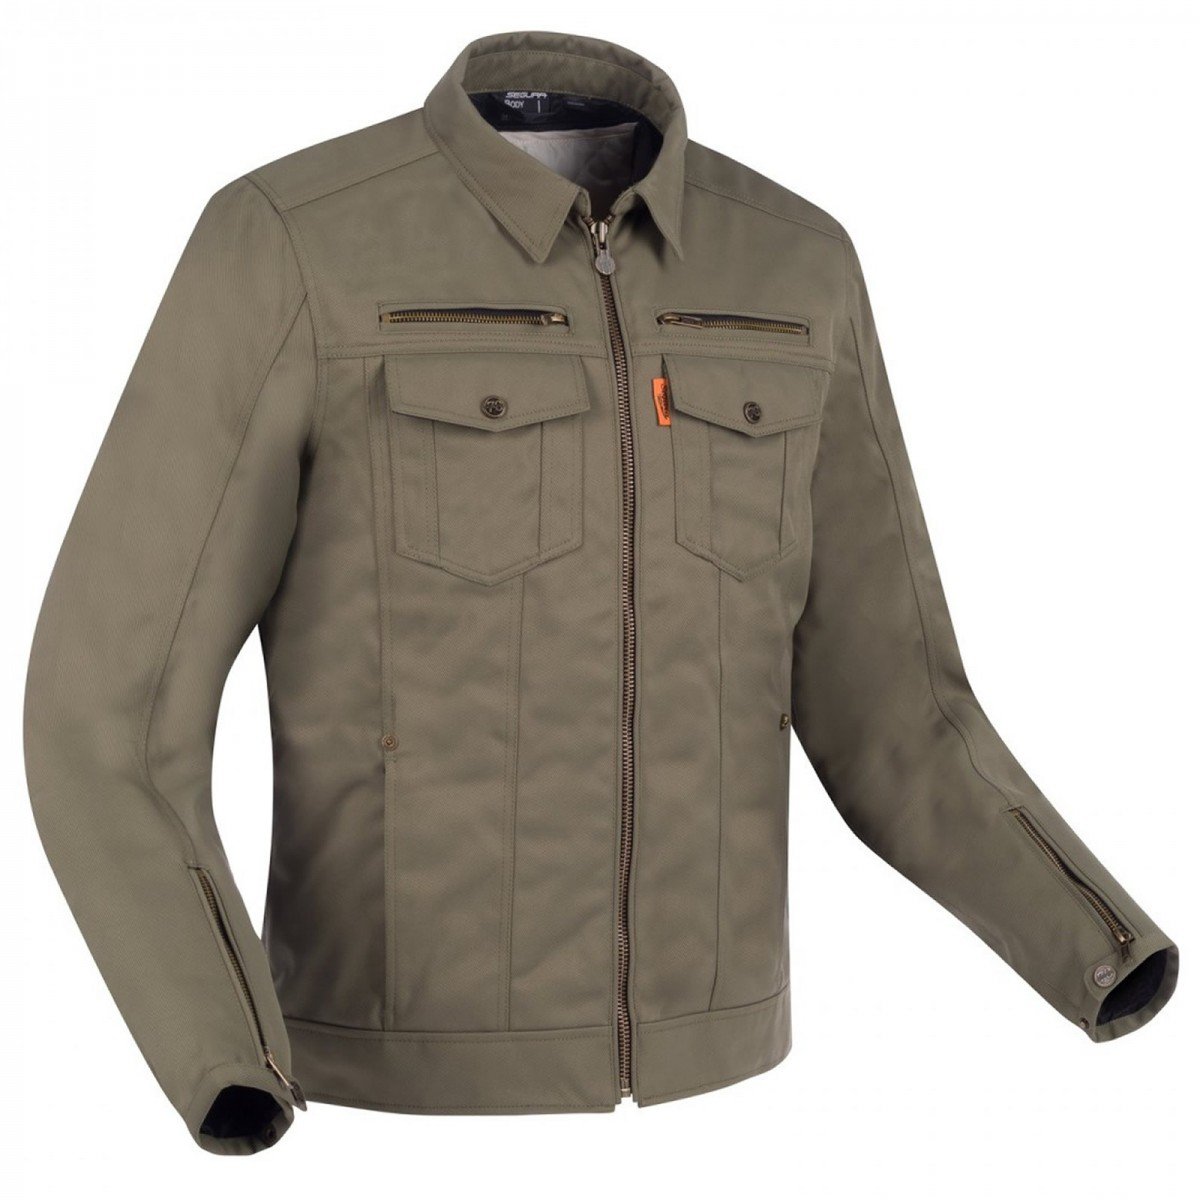 Image of Segura Patrol Jacket Khaki Size XL ID 3660815163061